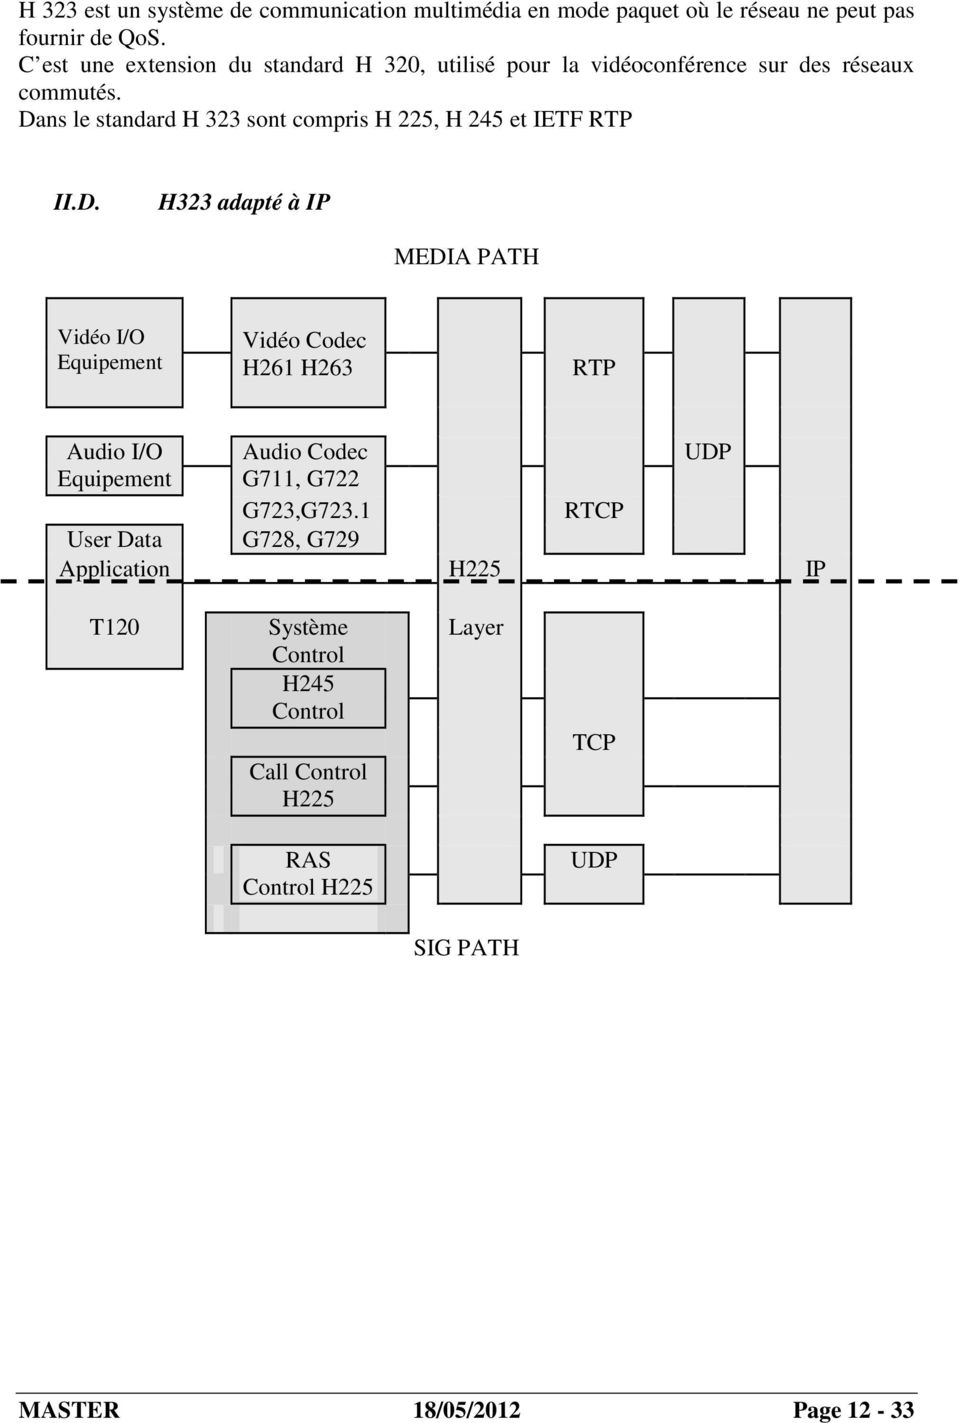 Dans le standard H 323 sont compris H 225, H 245 et IETF RTP II.D. H323 adapté à IP MEDIA PATH Vidéo I/O Equipement Vidéo Codec H261 H263 RTP Audio I/O Audio Codec UDP Equipement G711, G722 G723,G723.